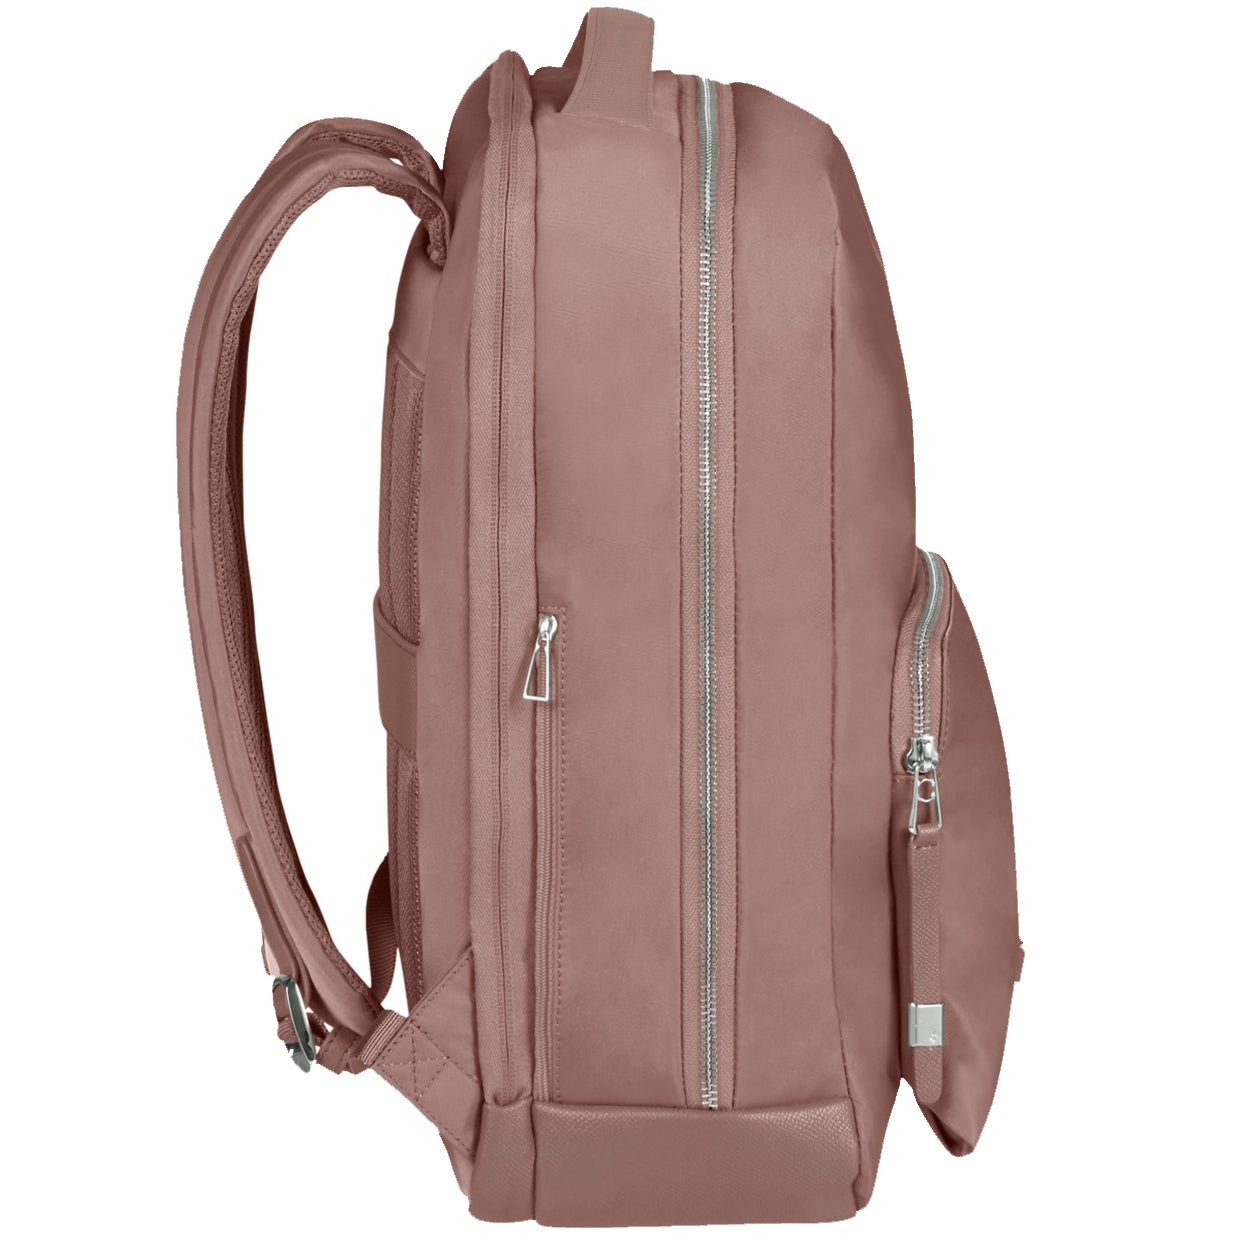 Samsonite Be-Her Backpack 40 cm - Antique Pink